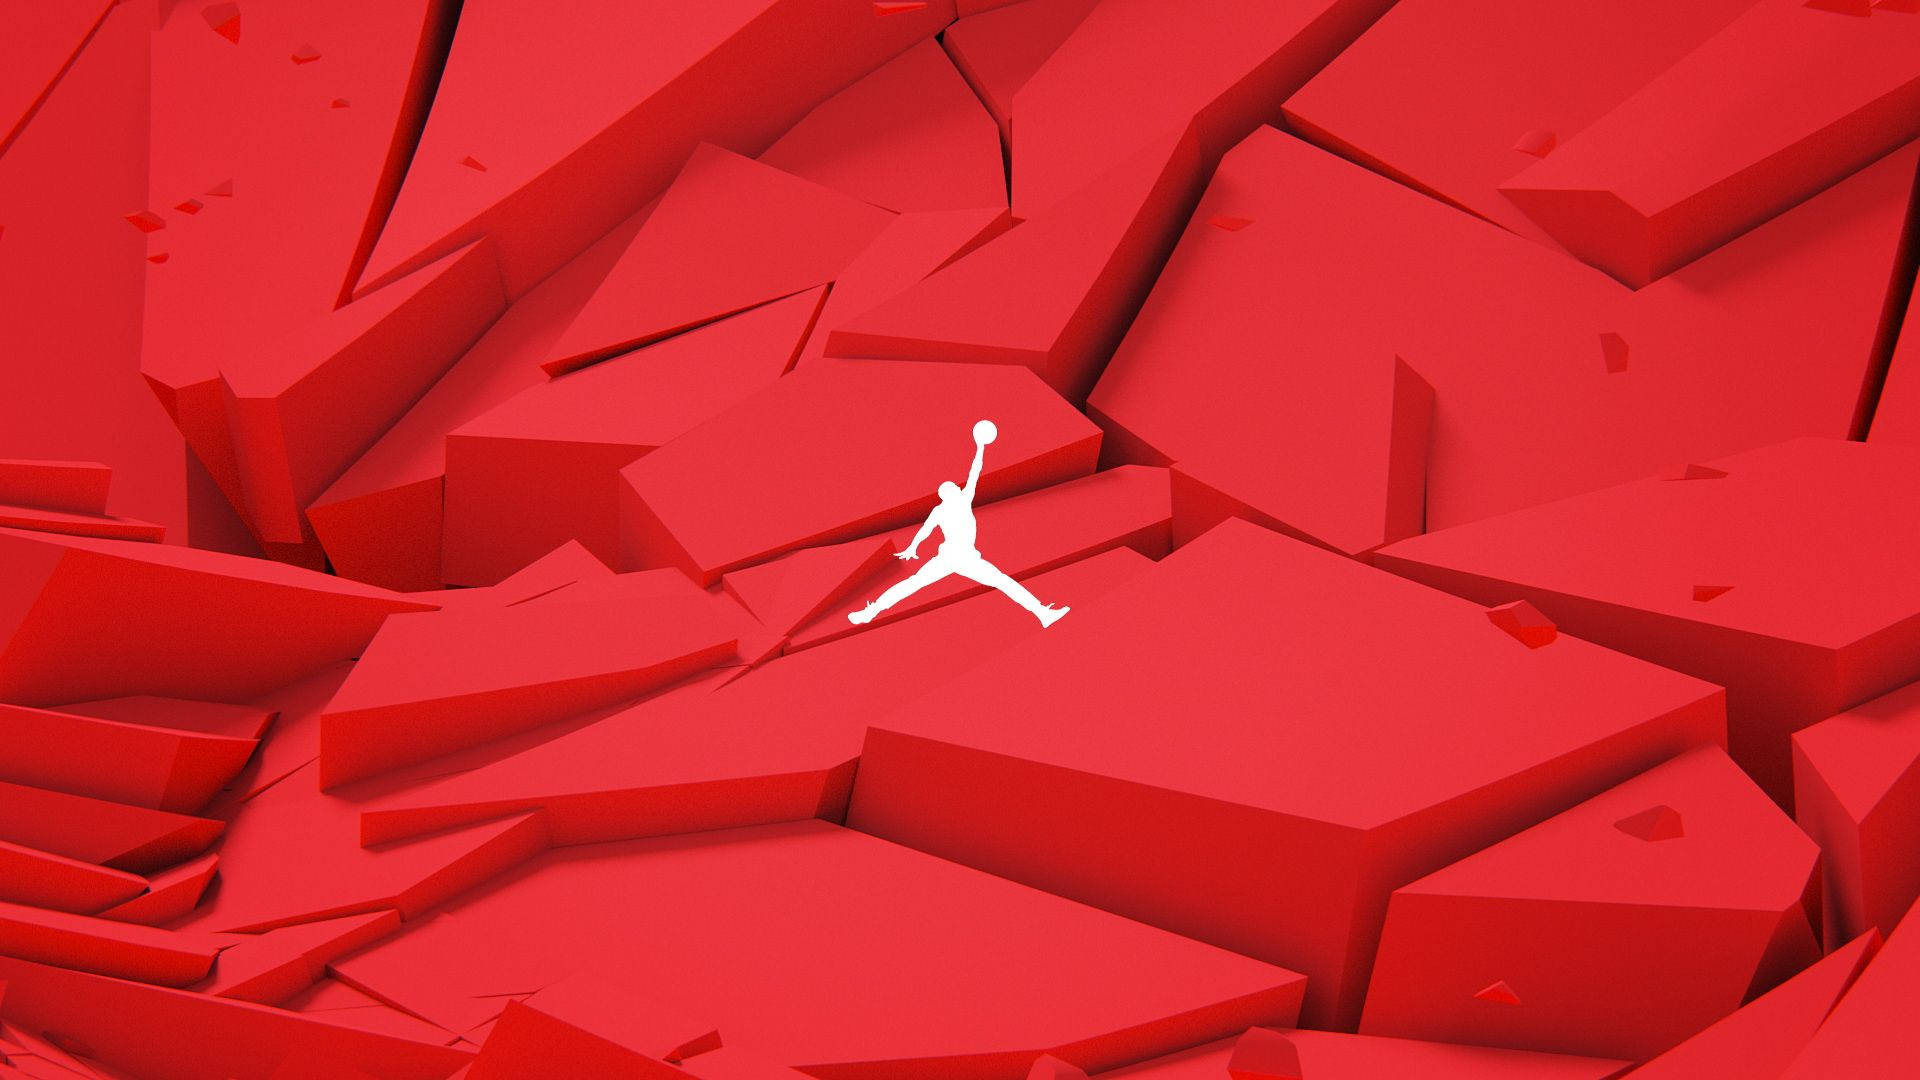 [200+] Air Jordan Wallpapers | Wallpapers.com